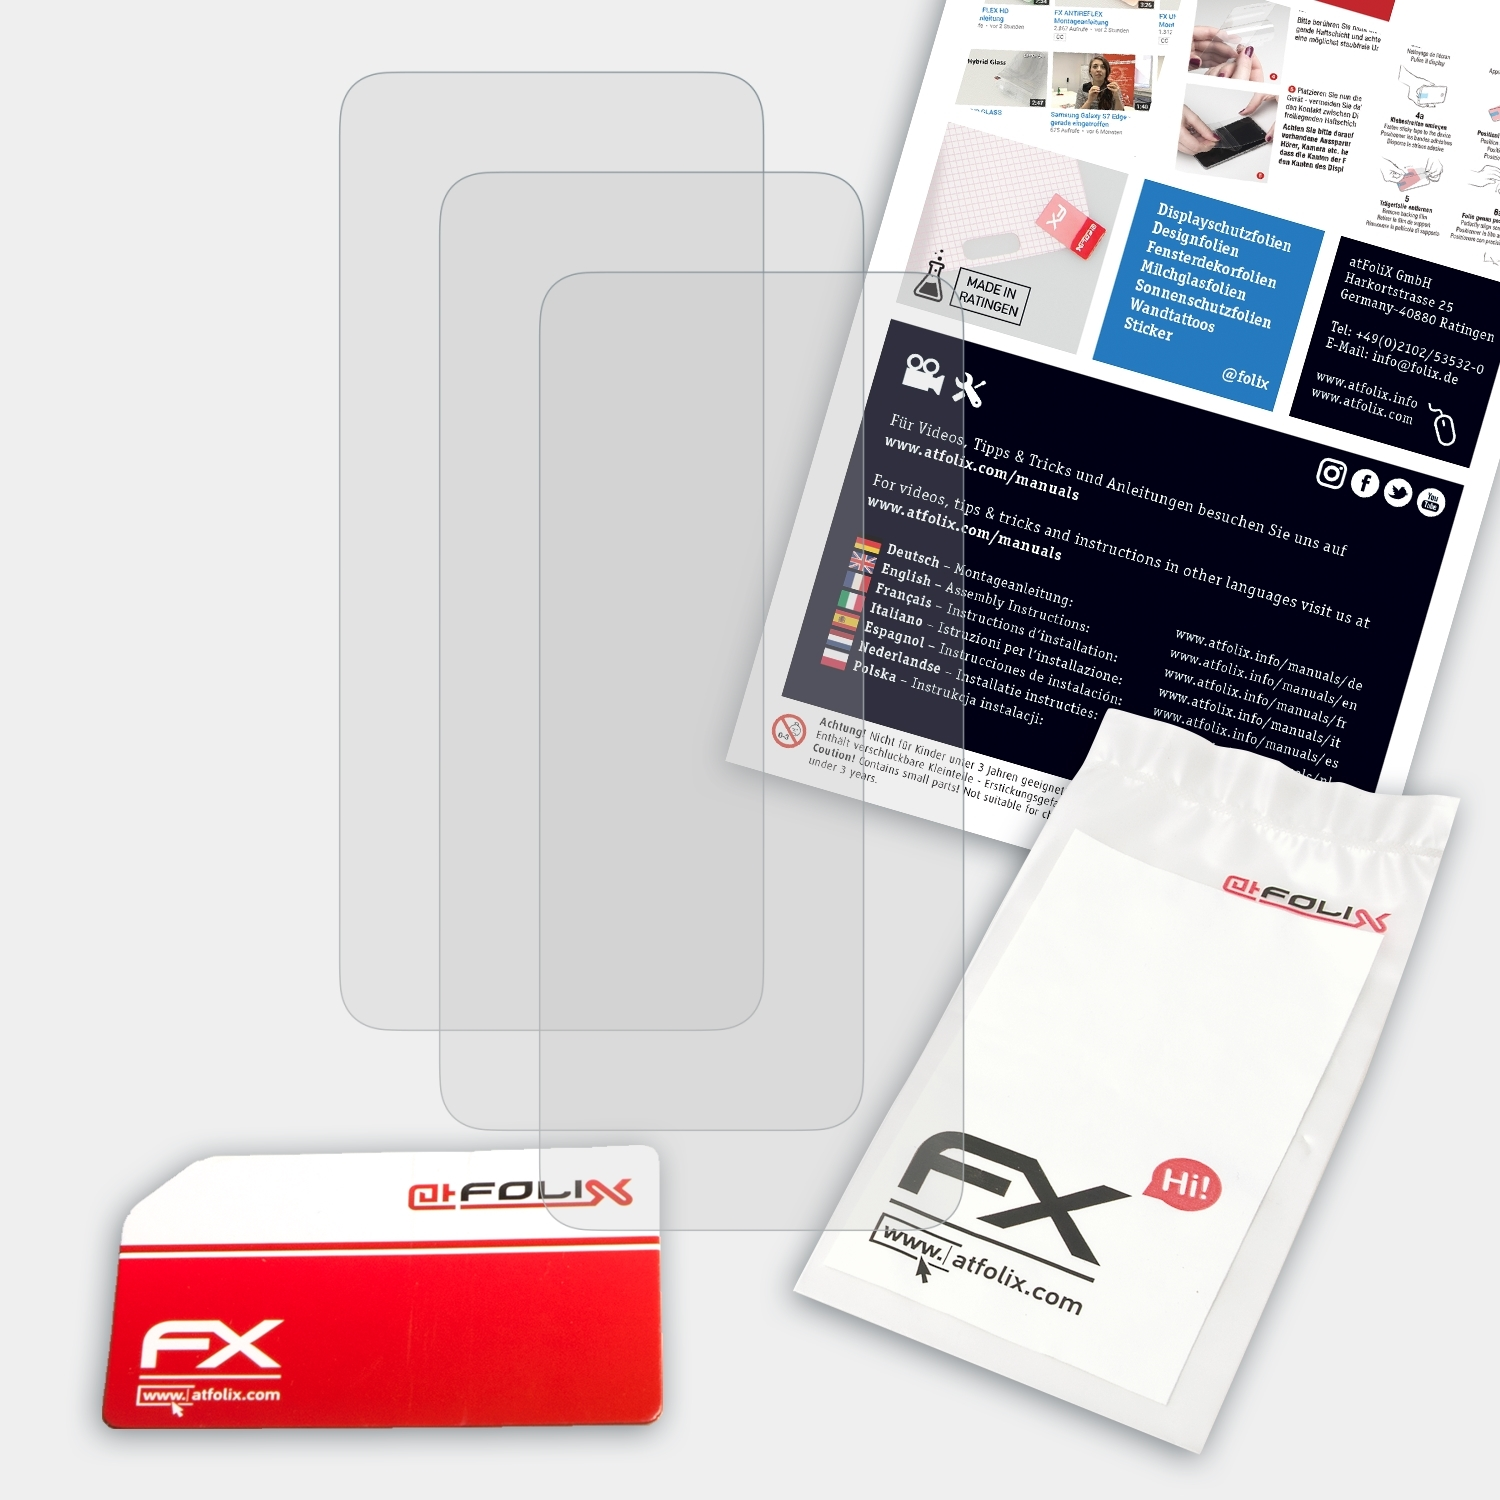 ATFOLIX 3x FX-Antireflex Displayschutz(für ZenFone Flip) Asus 8